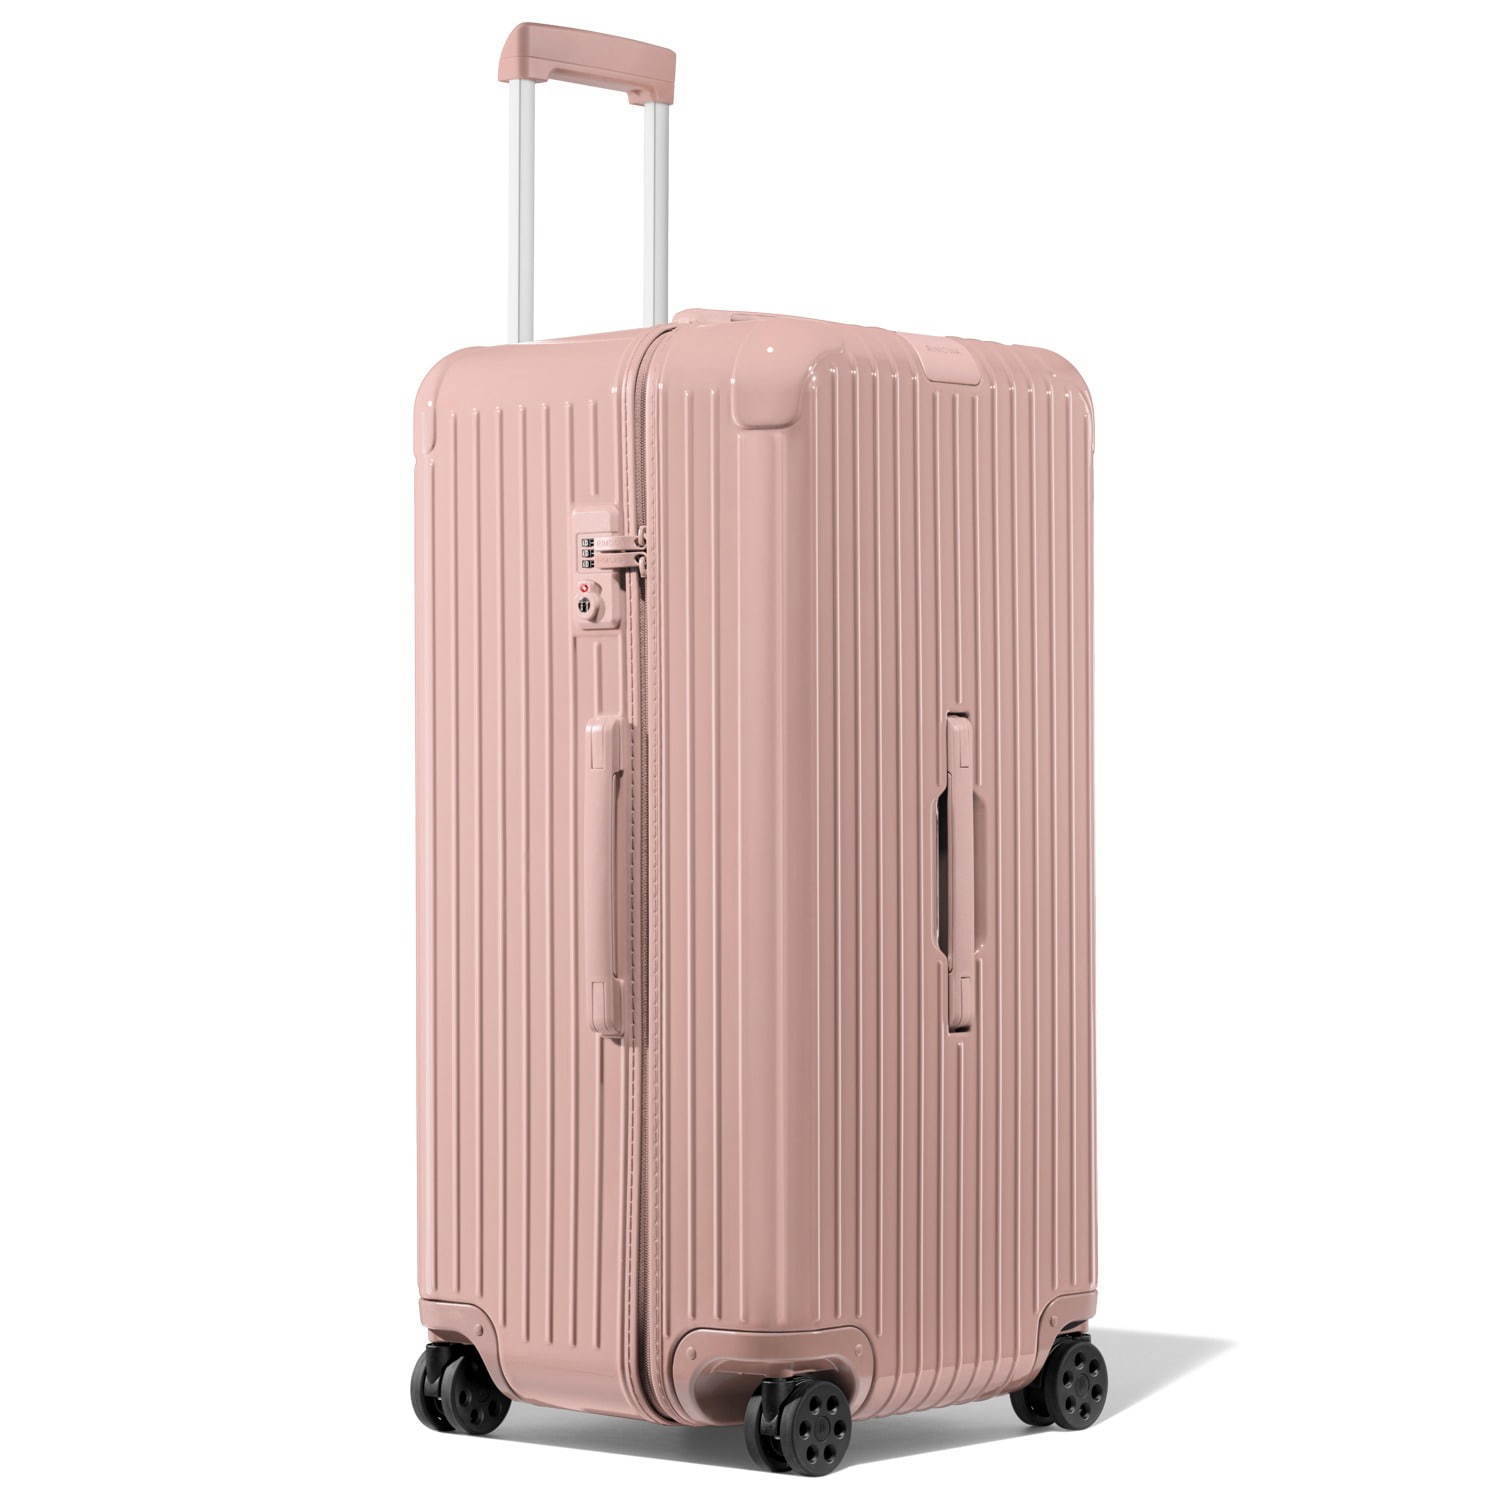 リモワのスーツケース「エッセンシャル」砂漠の情景に着想した新色、空 ...